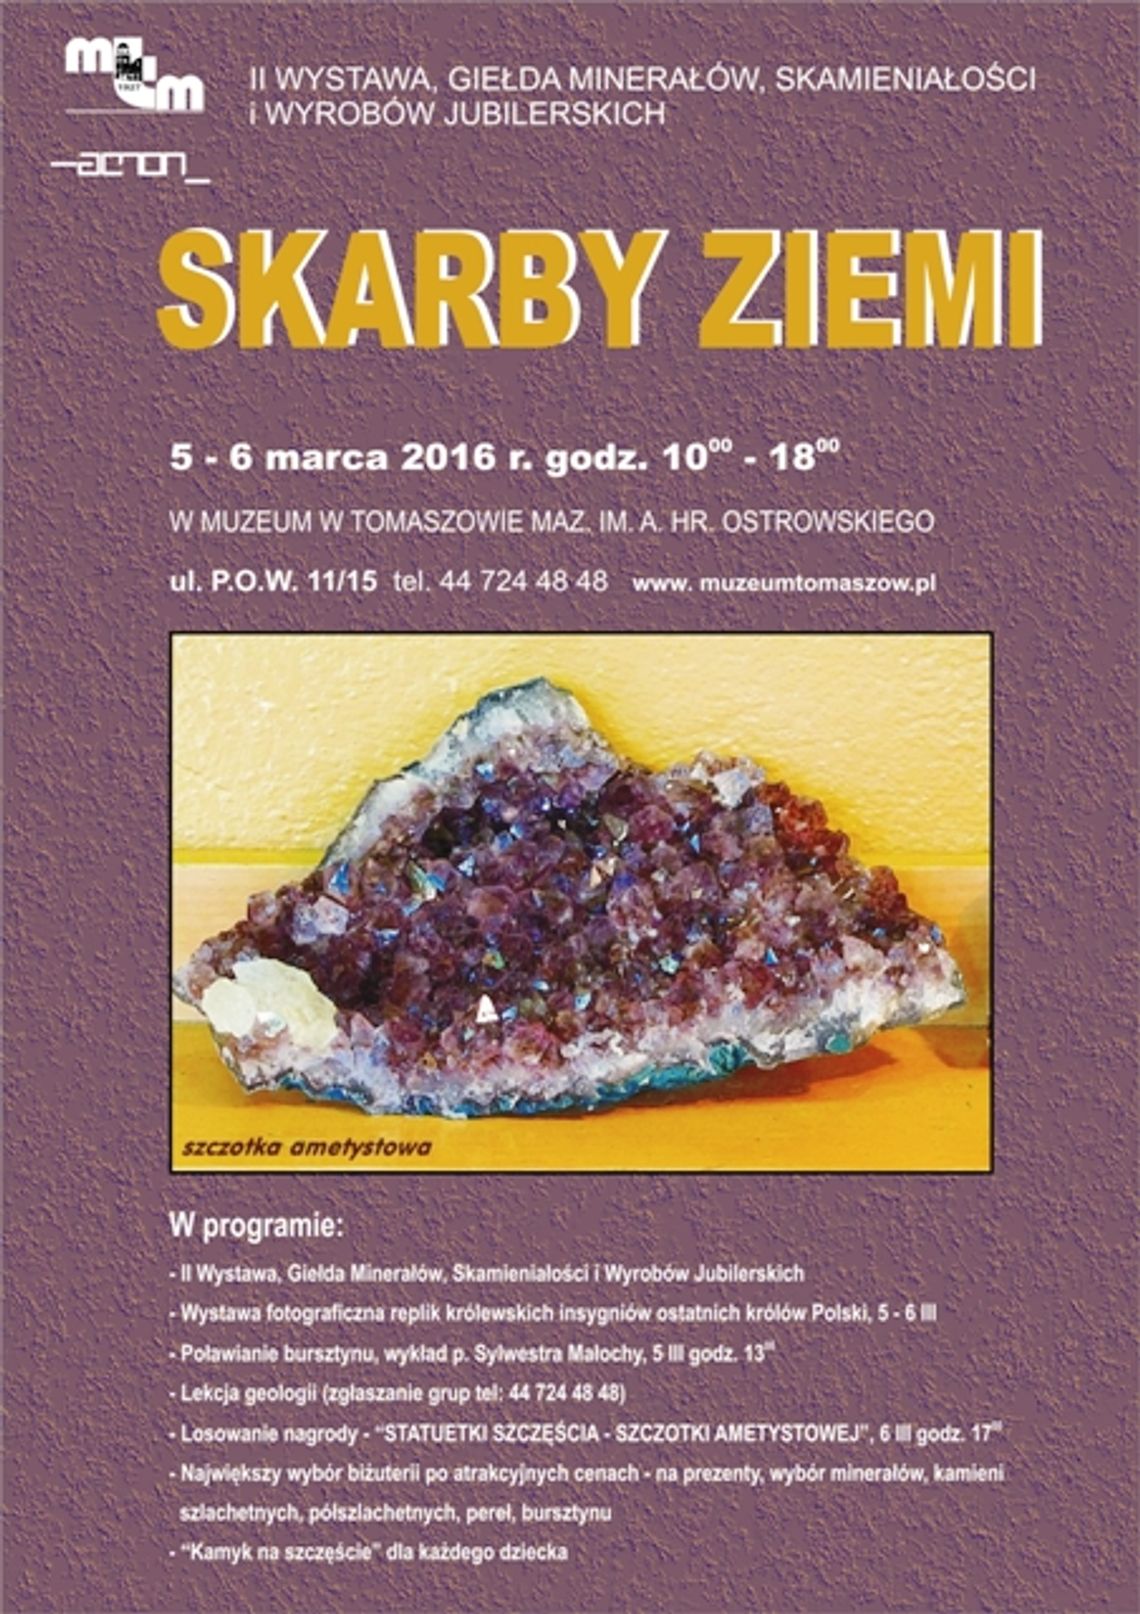 II Wystawa-Giełda Minerałów, Skał, Skamieniałości  i Wyrobów Jubilerskich pn. SKARBY  ZIEMI.